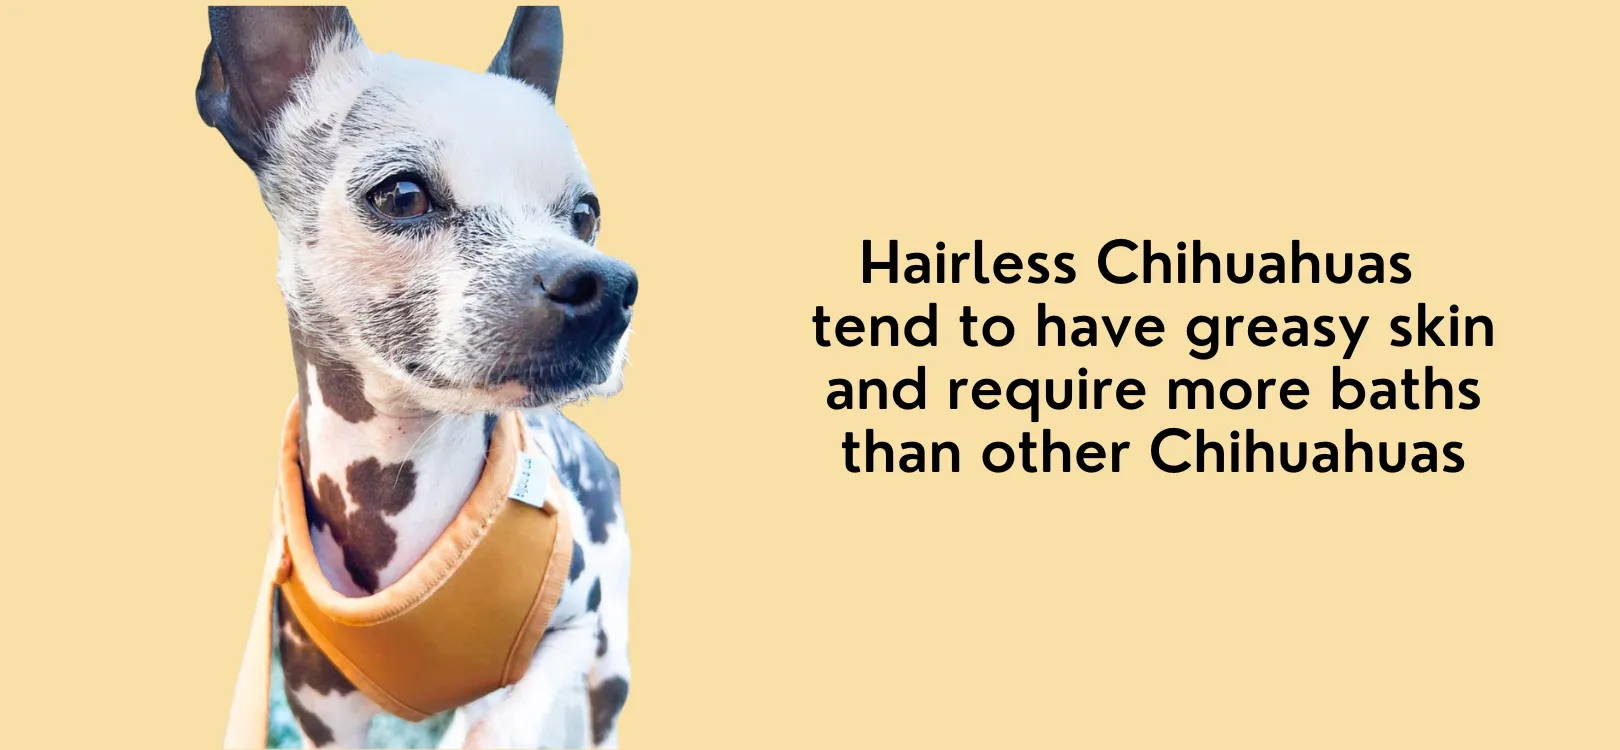 chihuahuas hairless